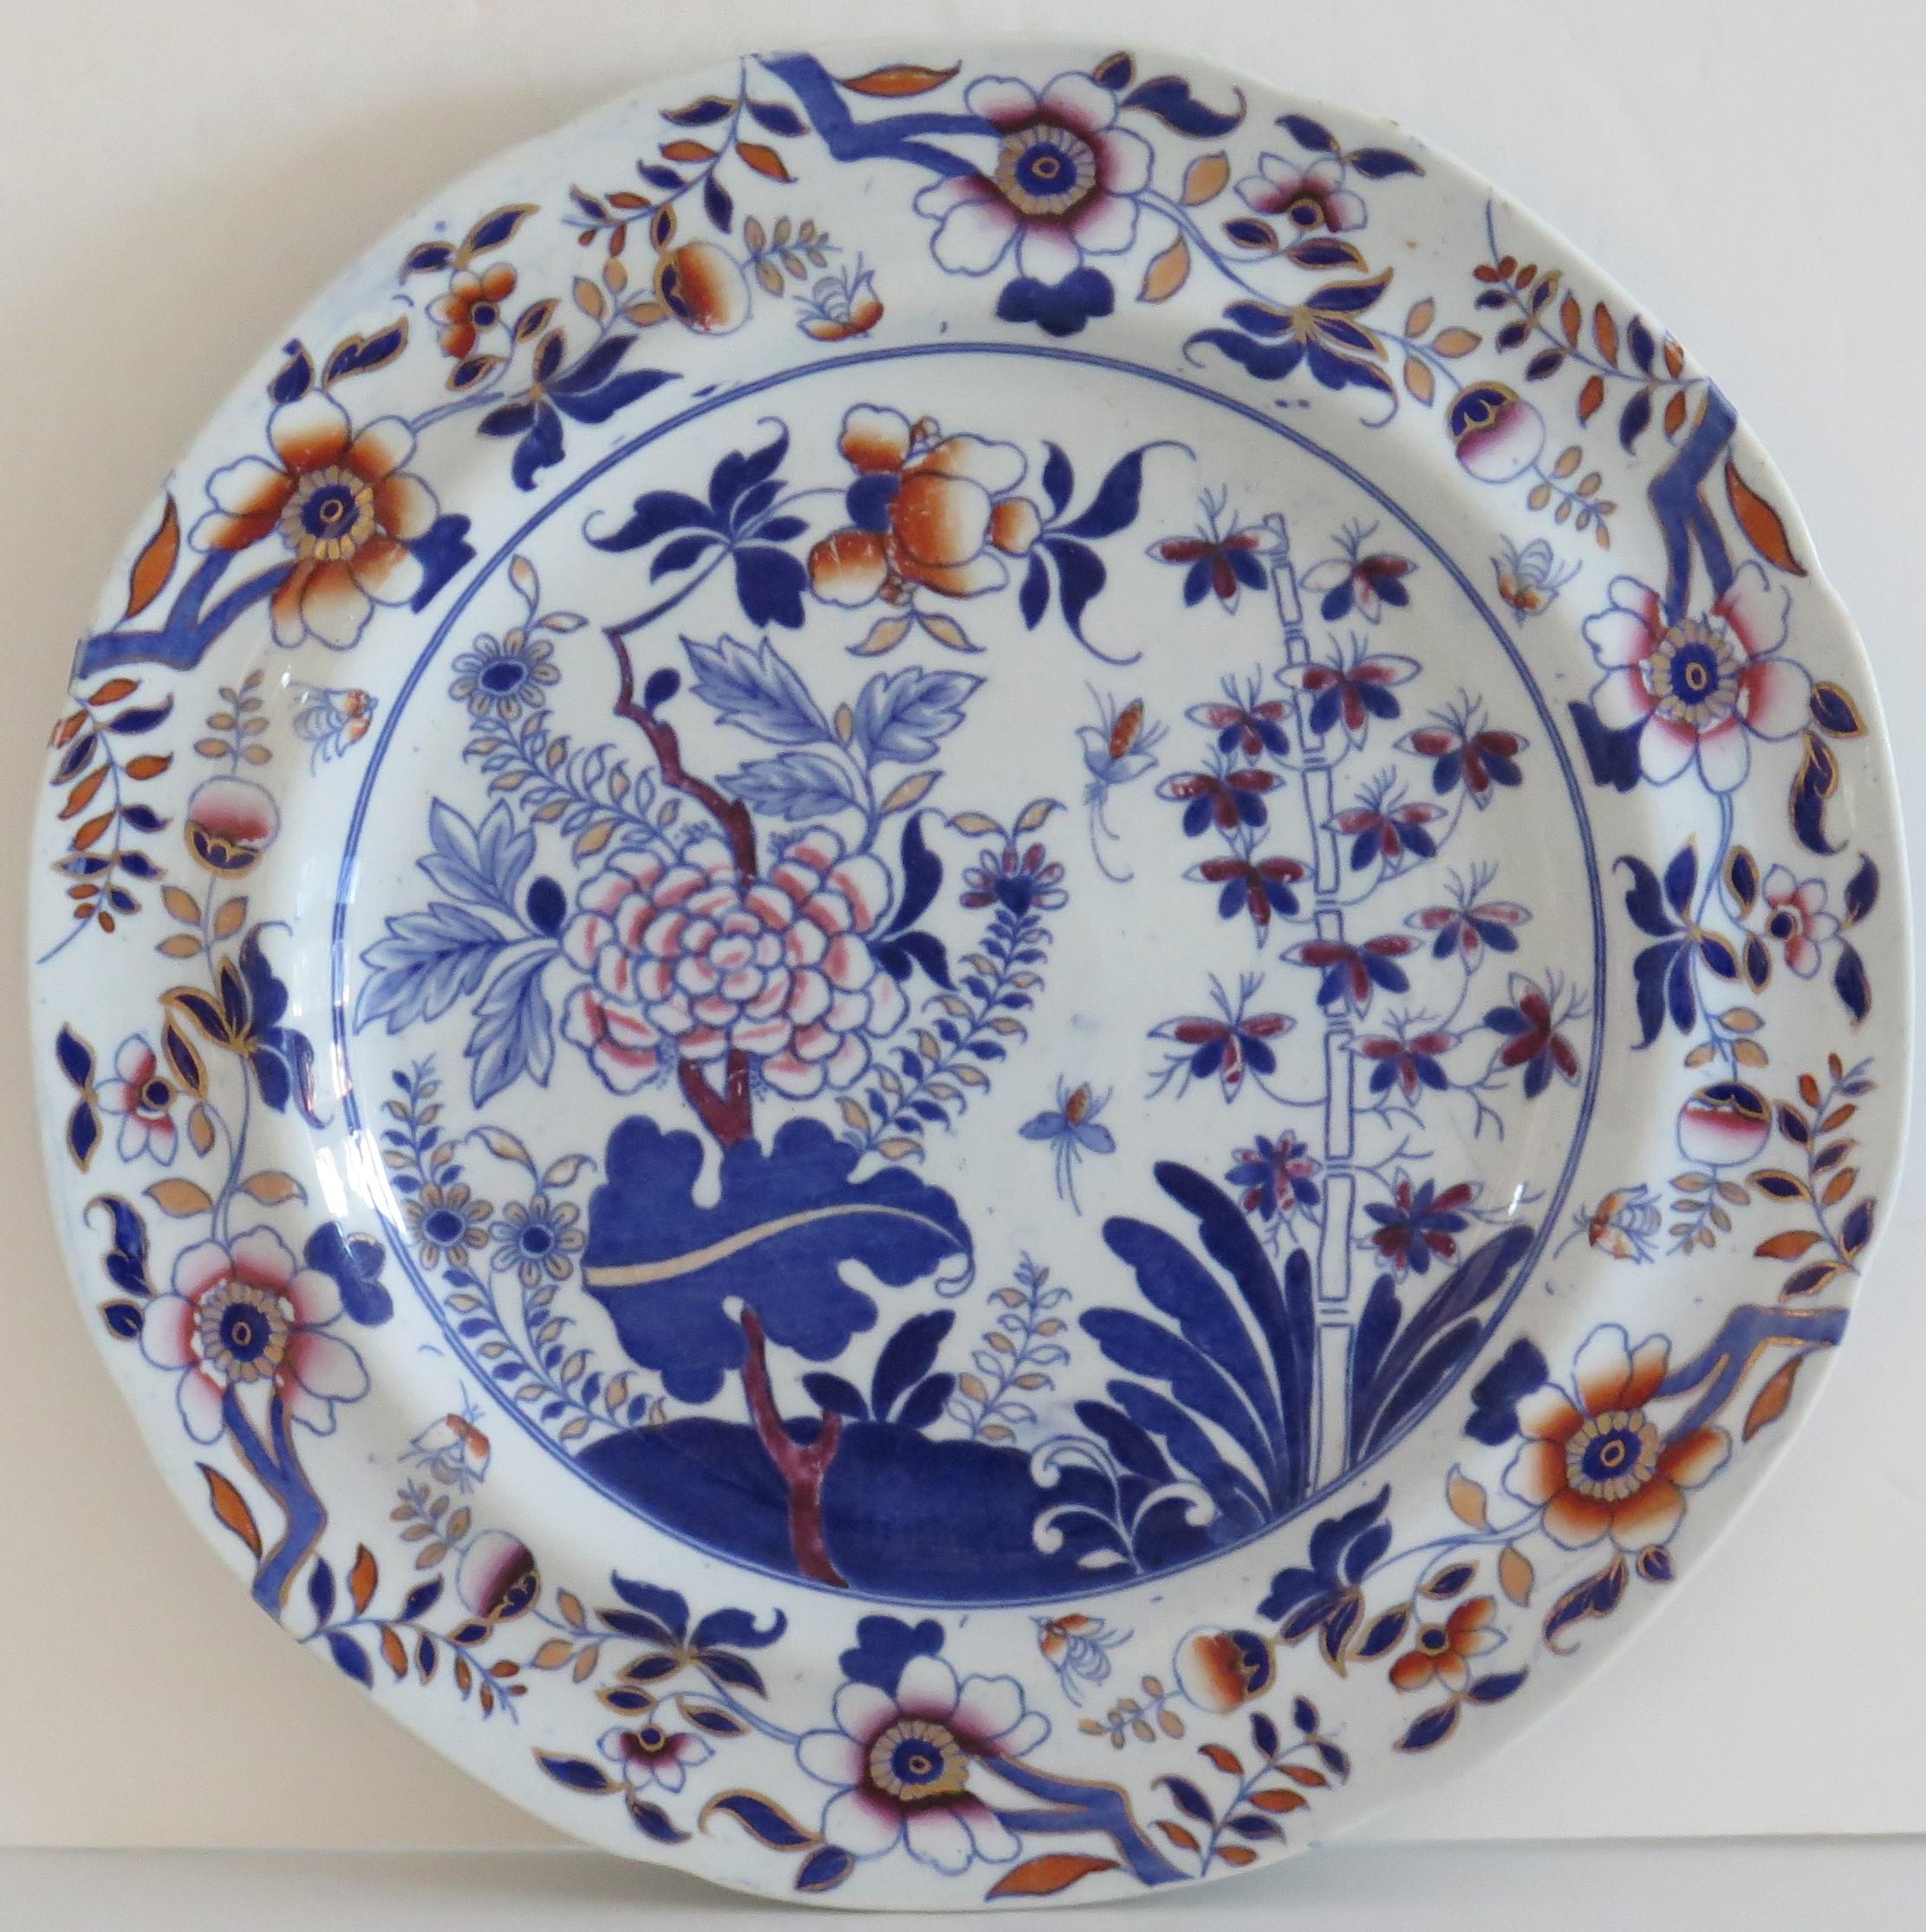 Il s'agit d'une magnifique assiette au motif d'inspiration chinoise numéro 4089, produite par la manufacture Calle - Late Spode et fabriquée en faïence appelée Pearl-ware, au milieu du 19e siècle, vers 1850.

Cette assiette est bien empotée et son